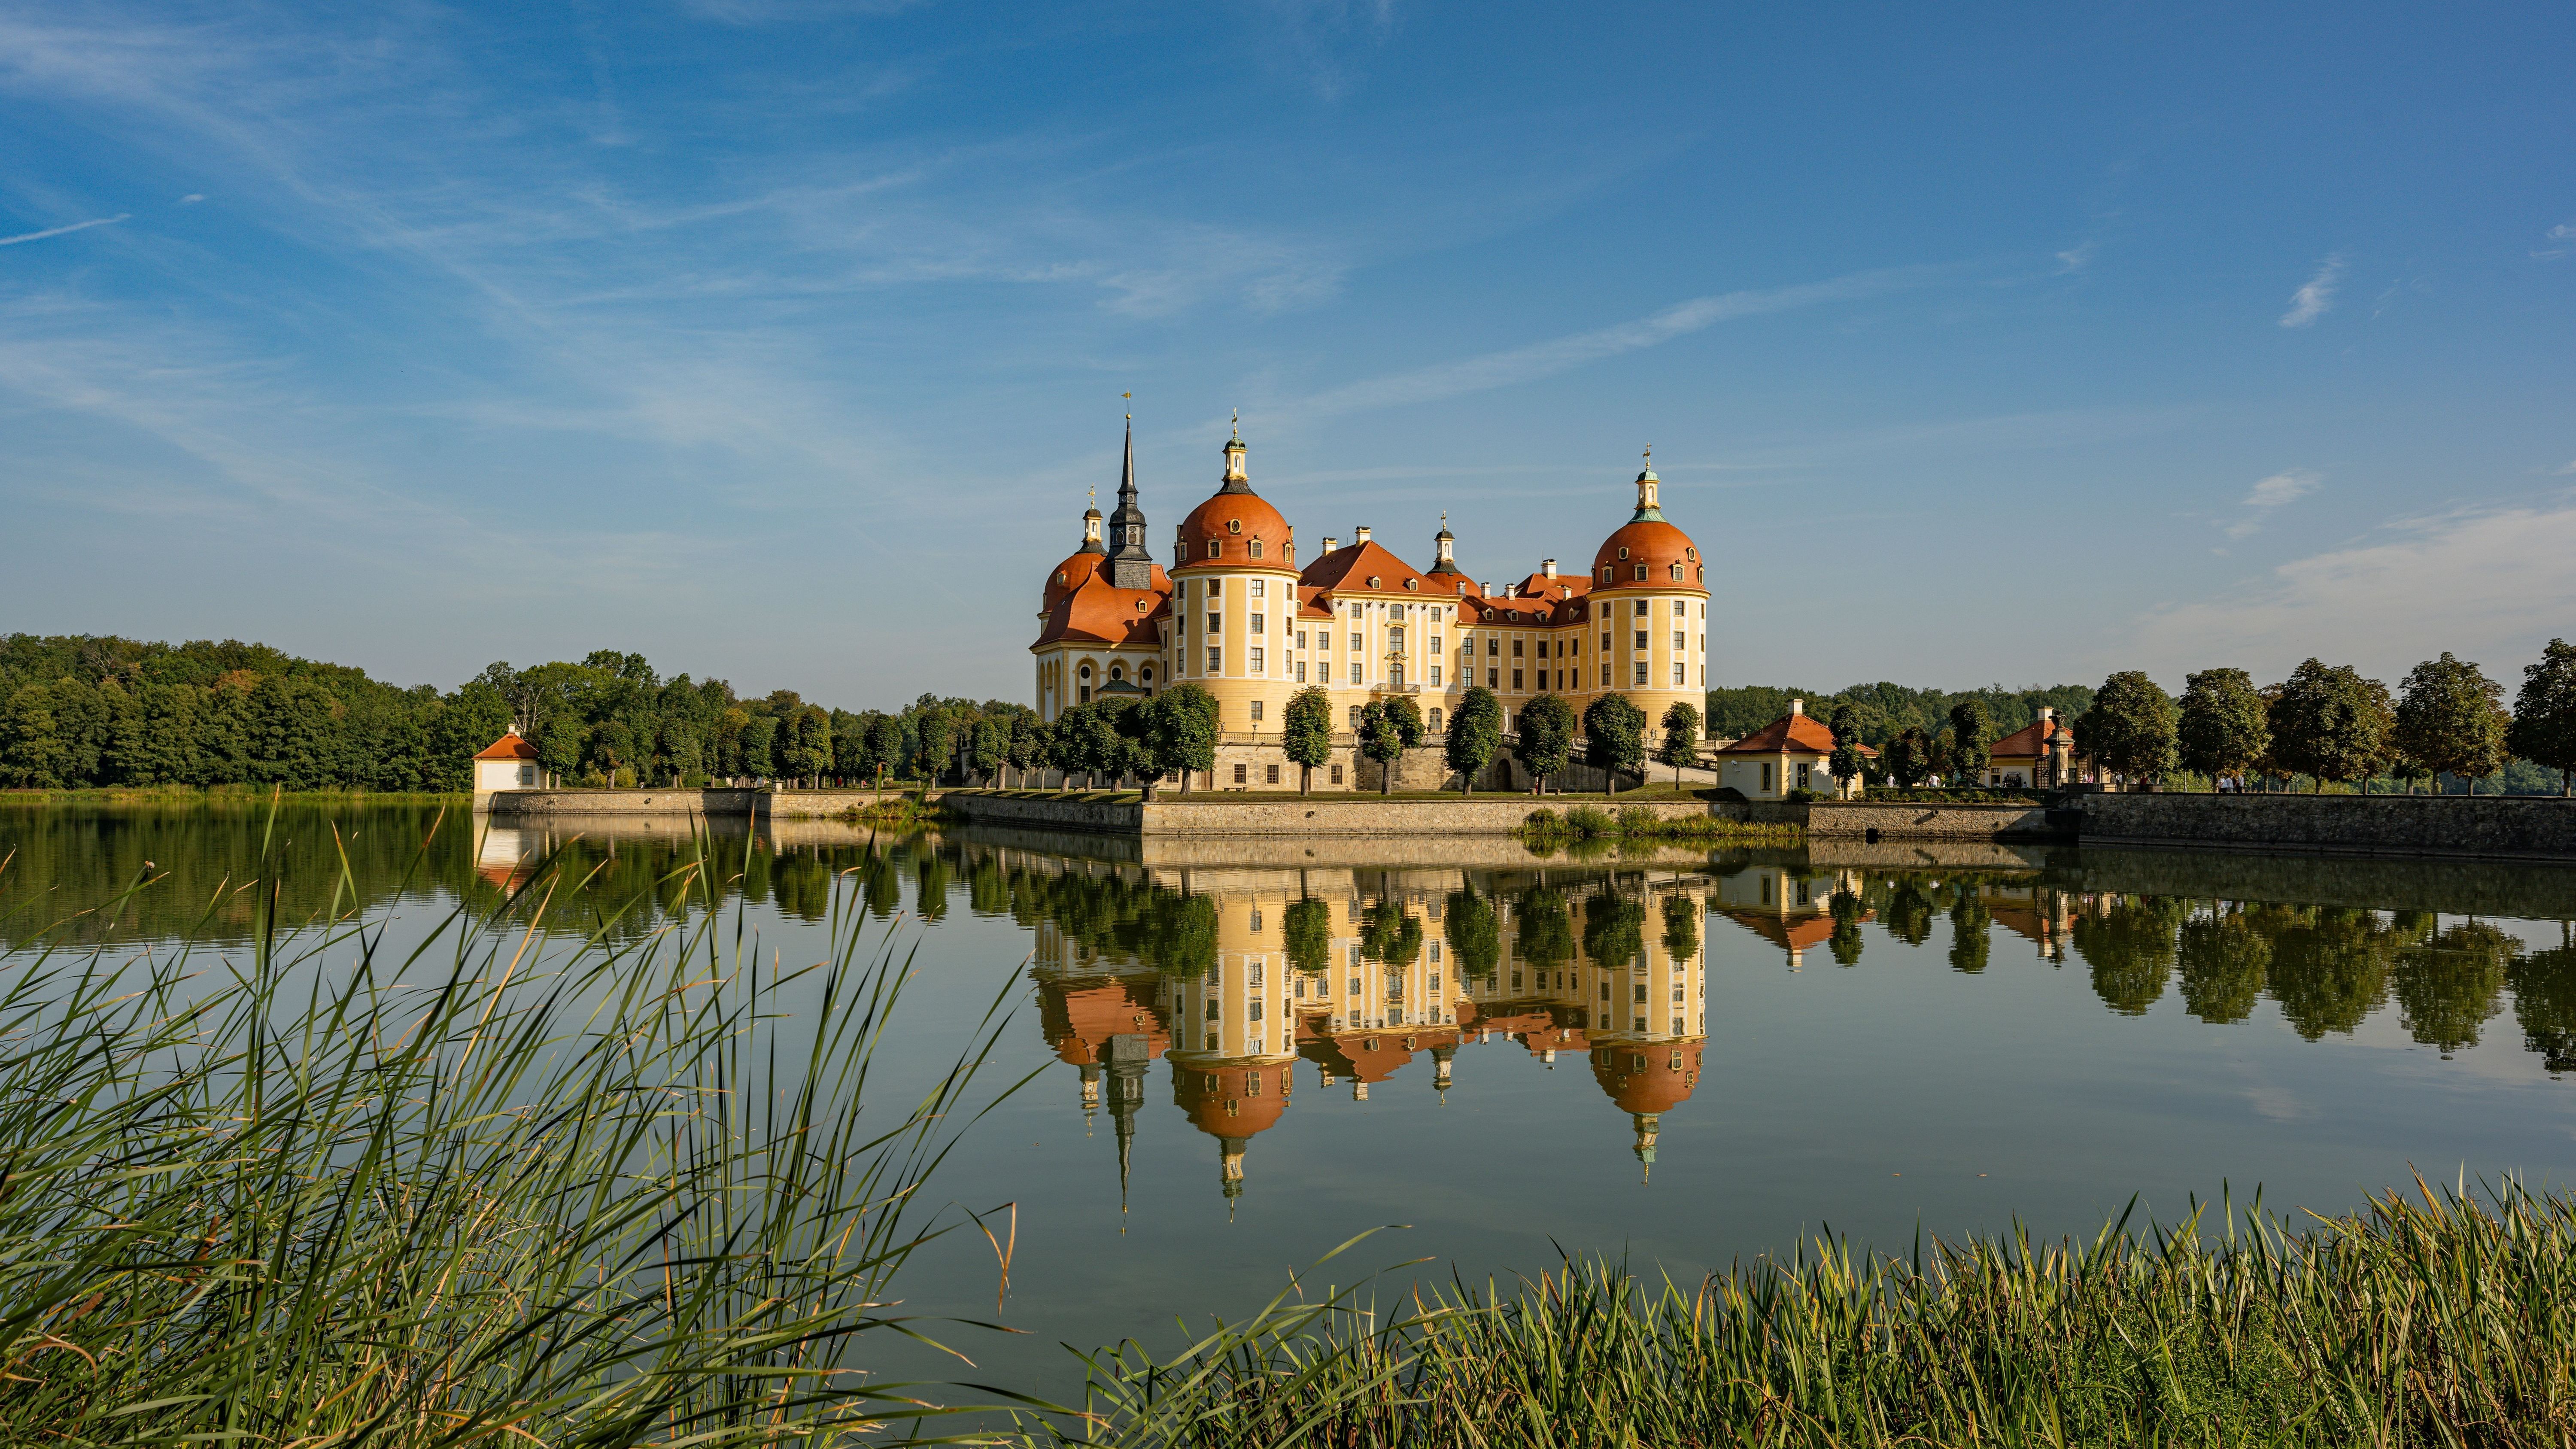 Beim Schloss Moritzburg wurde der Film "Drei Haselnüsse für Aschenbrödel" gedreht.